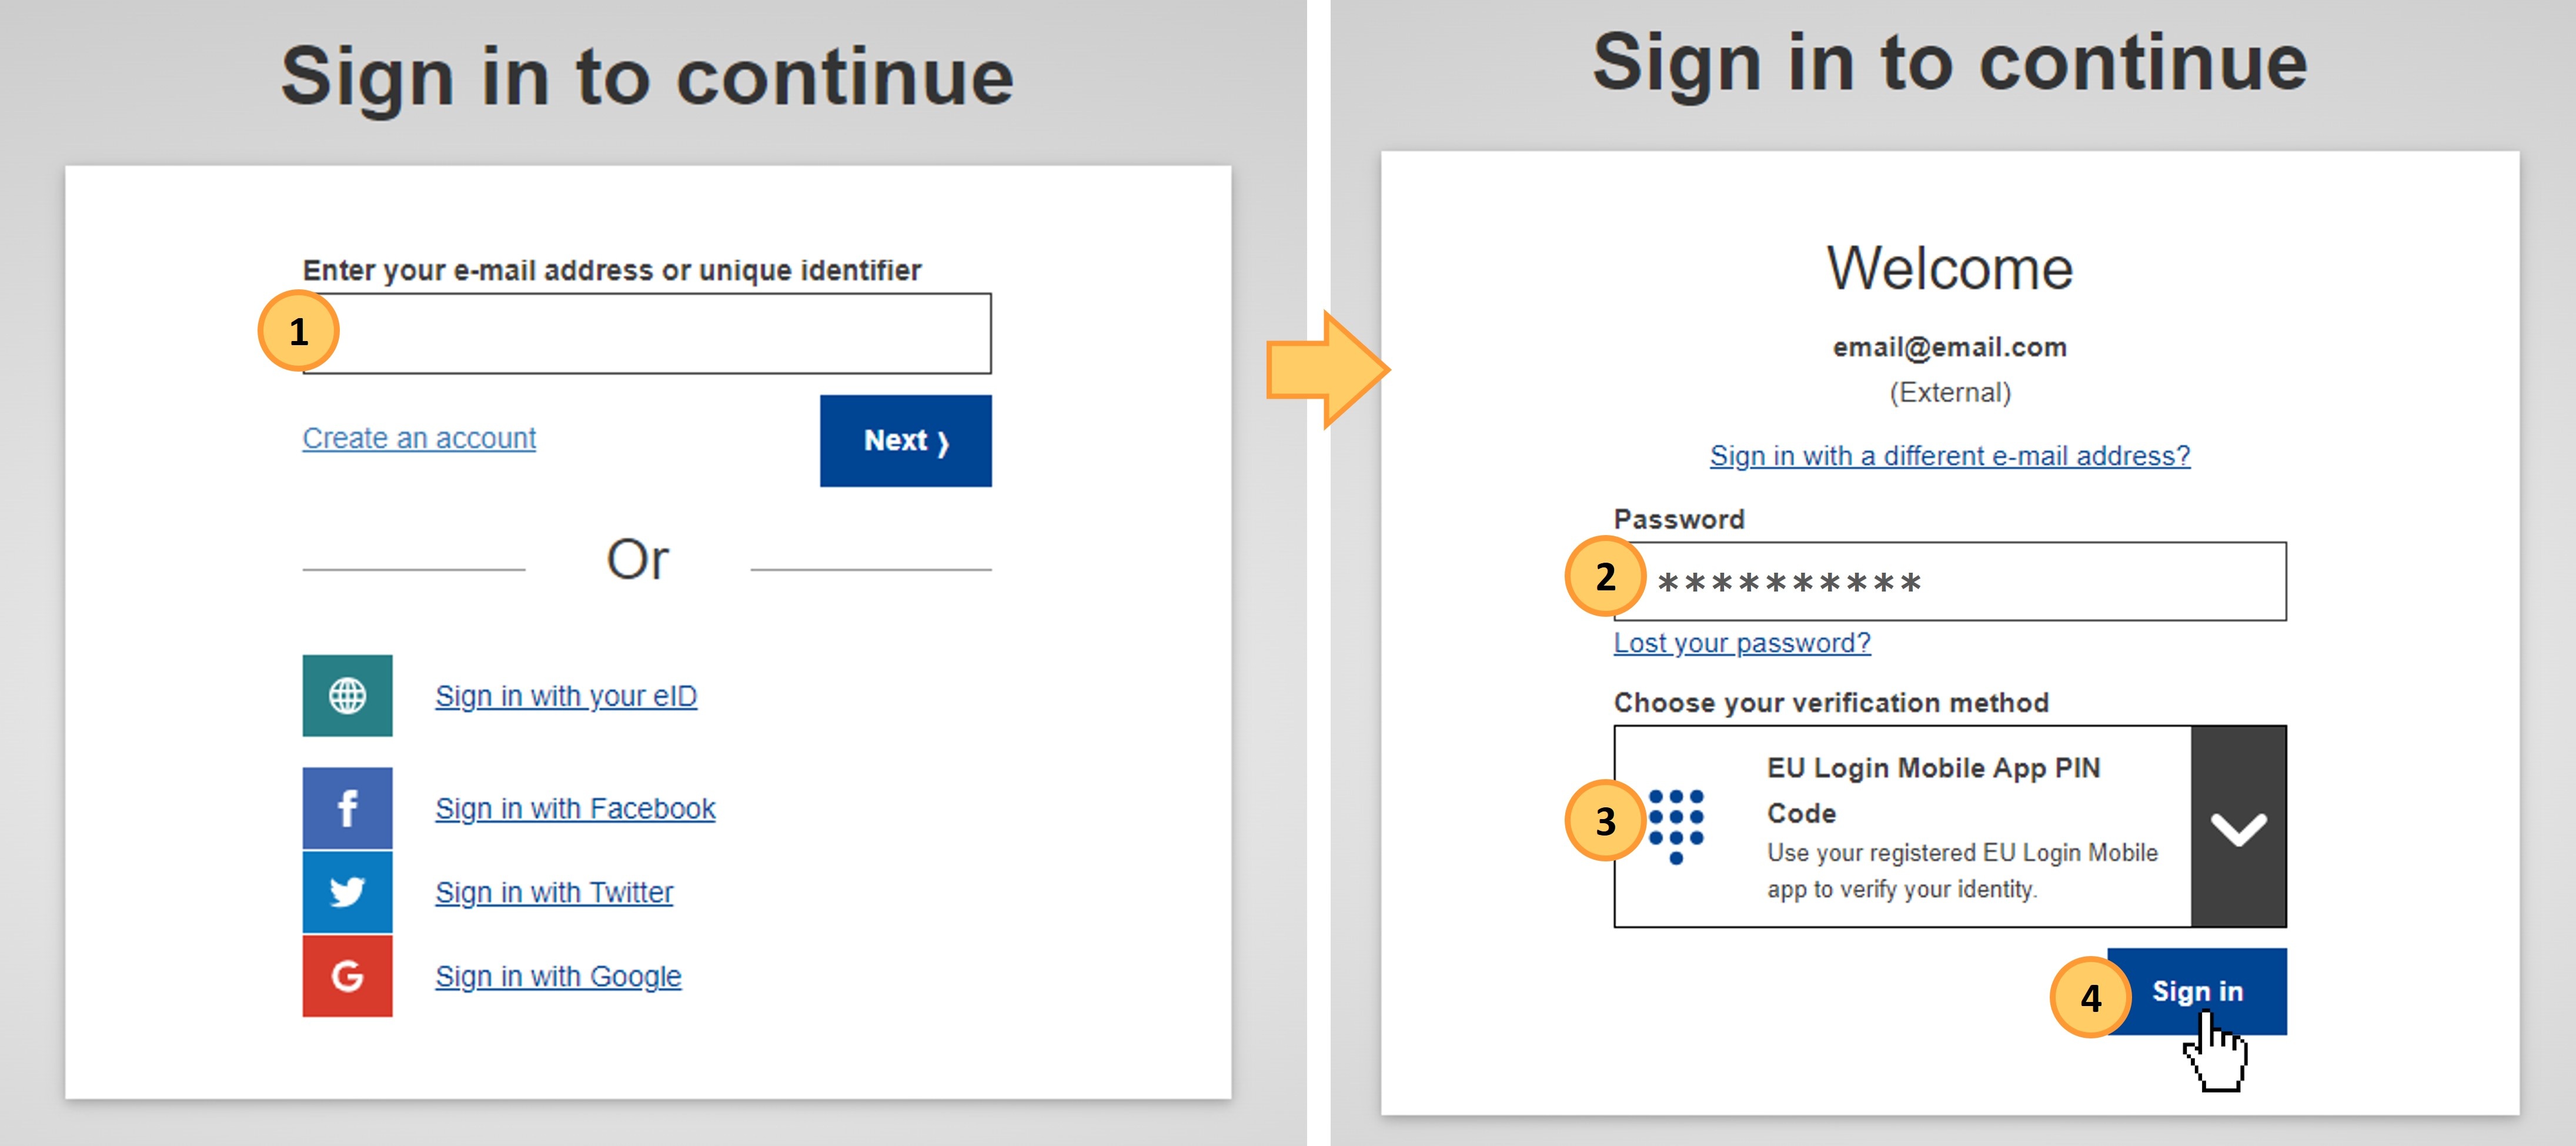 Sign in with an EU Login account using the EU Login Mobile App PIN code